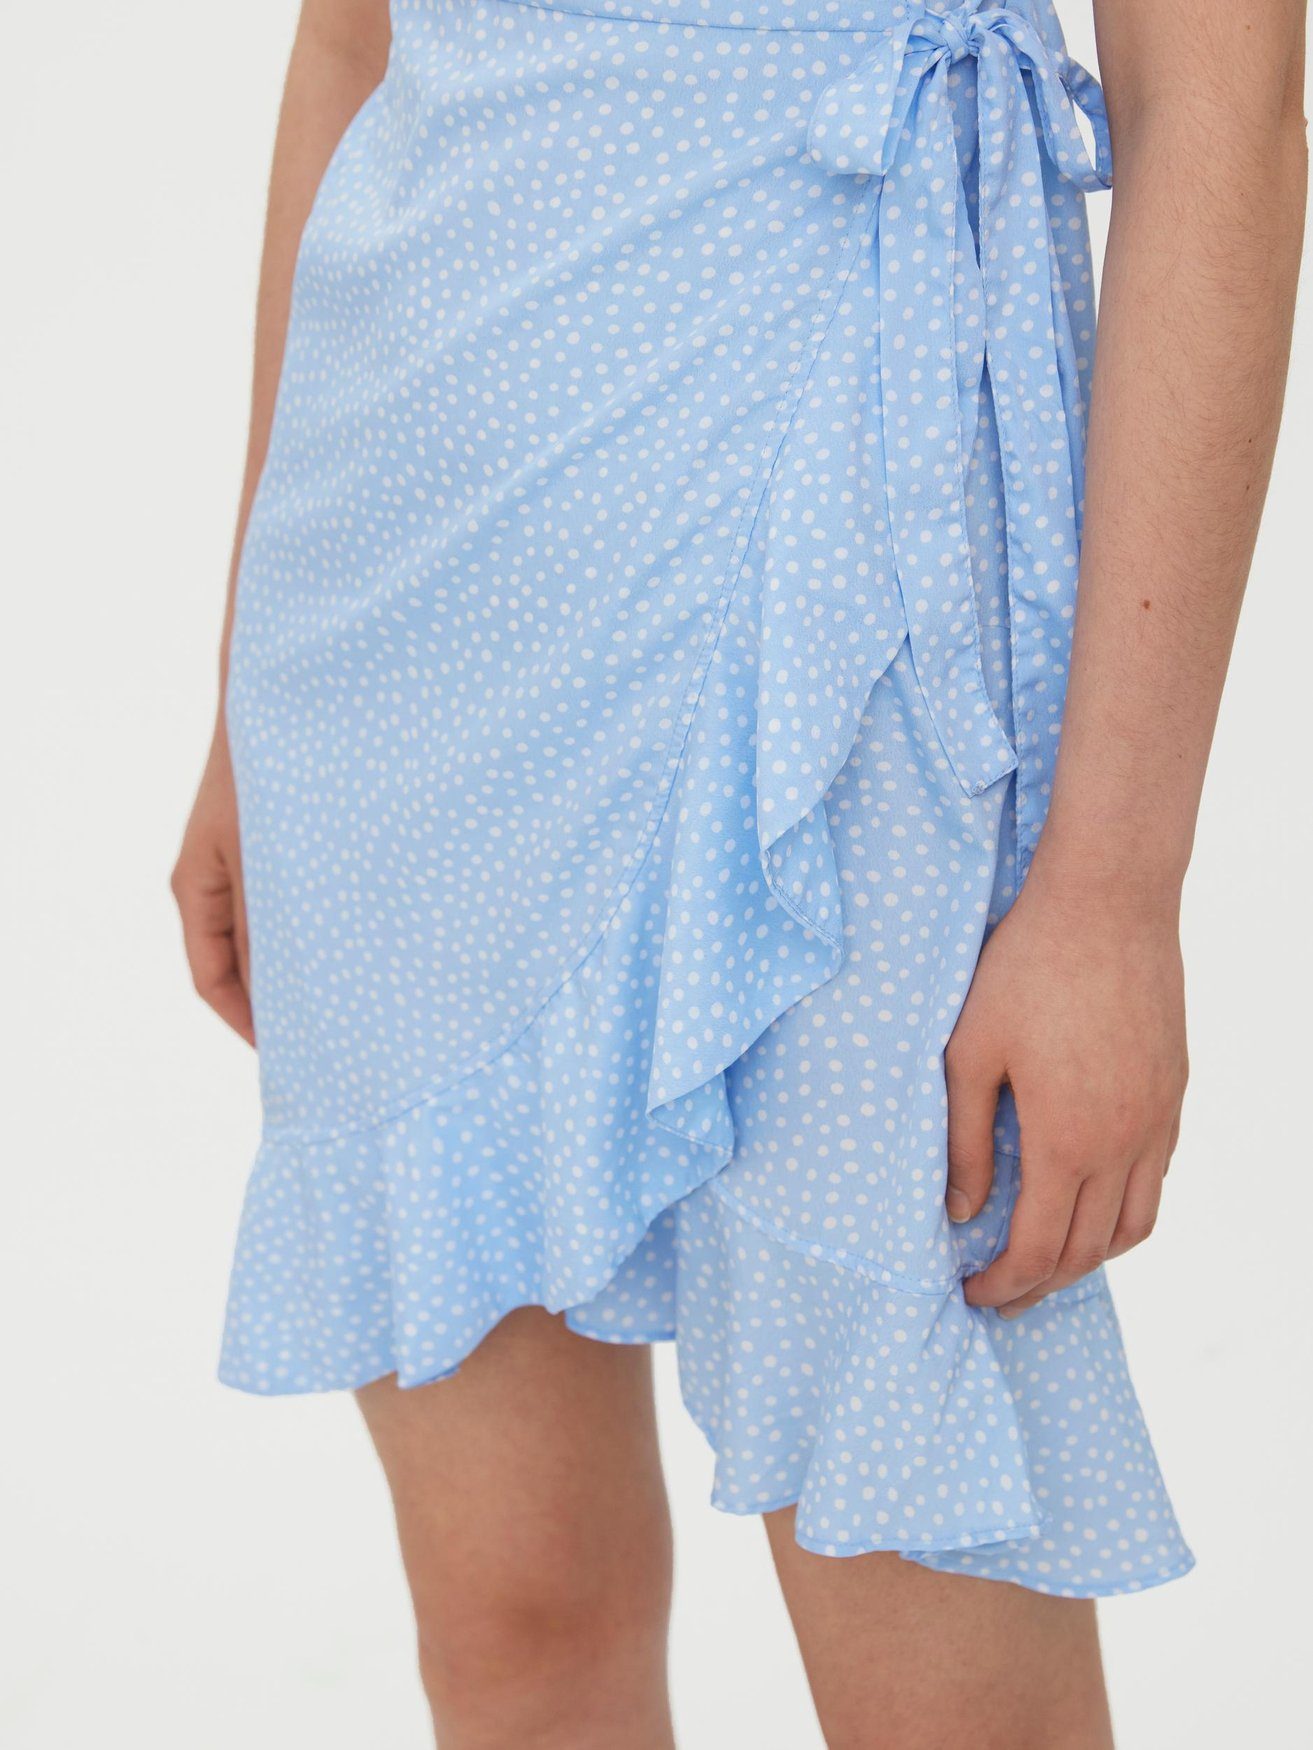 Wickel VMHENNA in Kurzes Blau 5757 Shirtkleid Moda Kleid mit Vero (kurz) Rüschen